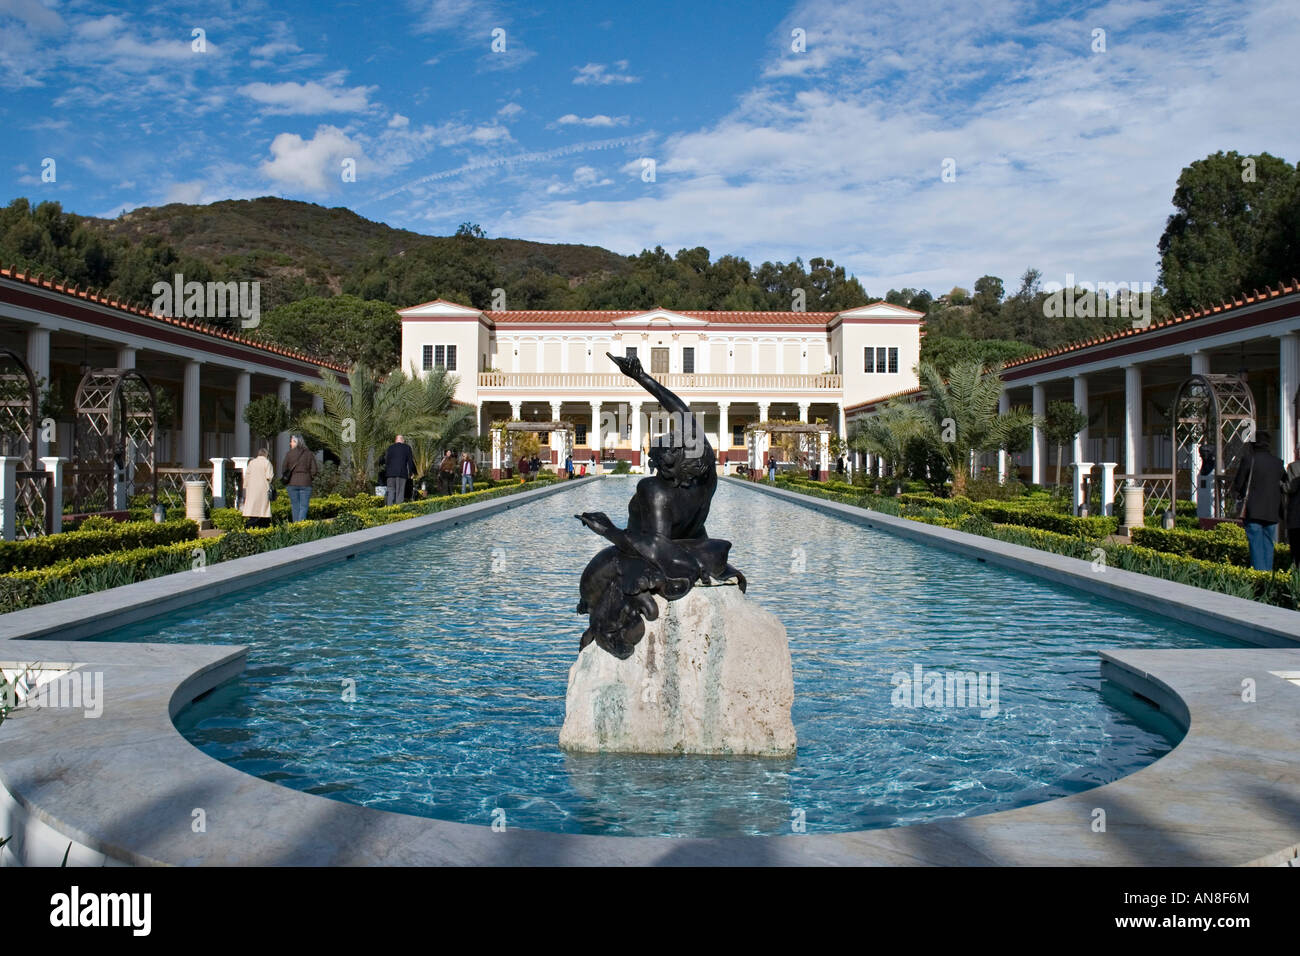 La Villa Getty, Malibu, USA. Construit pour J. Paul Getty, il a ouvert ses portes en 1974. Une reconstruction de la Villa dei Papiri (Herculanum, Pompéi, Italie) Banque D'Images